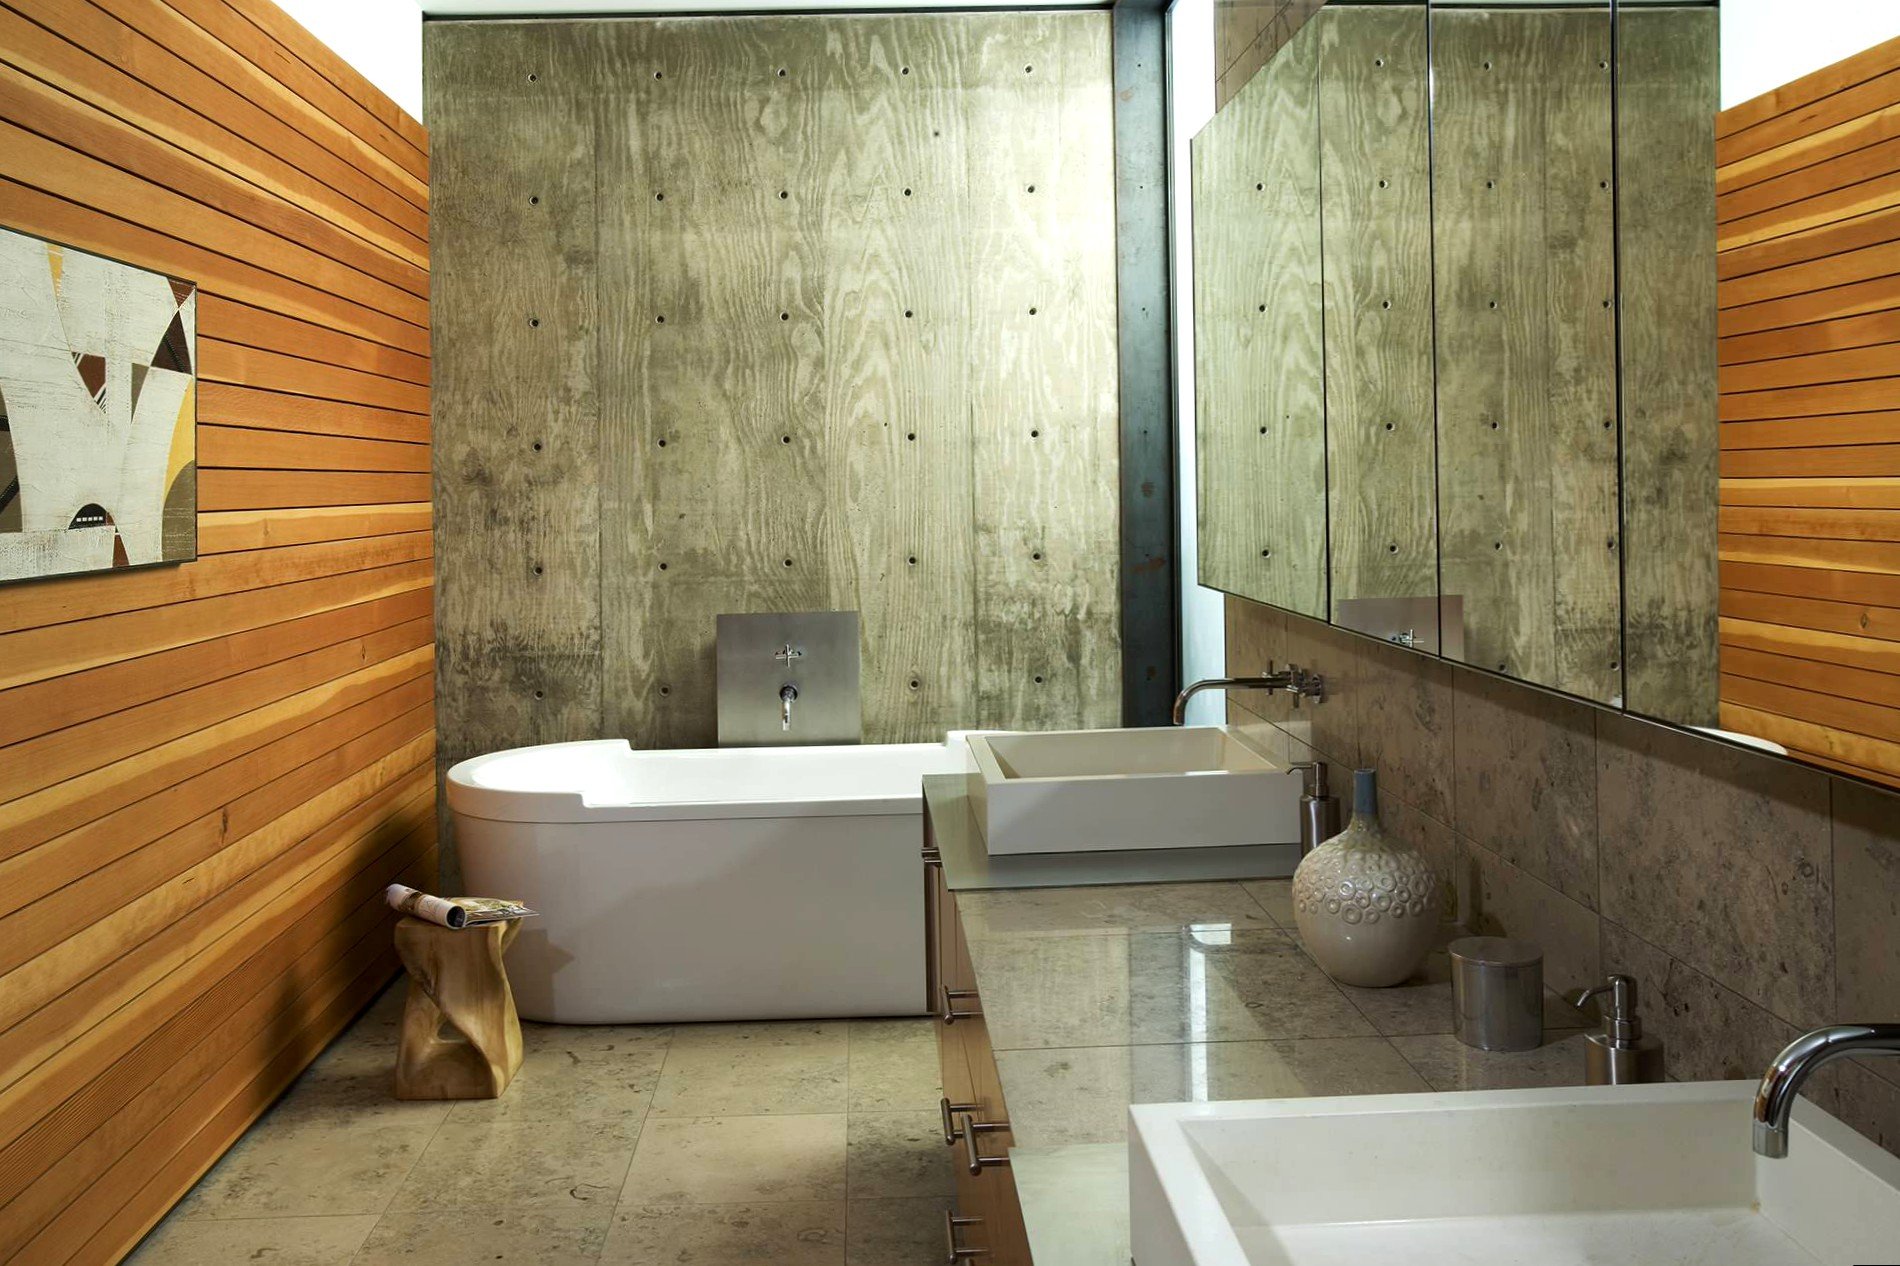 Ванна отделка стеновыми панелями. Деревянные панели в ванной комнате. Отделка ванной под дерево. Дерево в интерьере ванной комнаты. Панели для ванной комнаты под дерево.